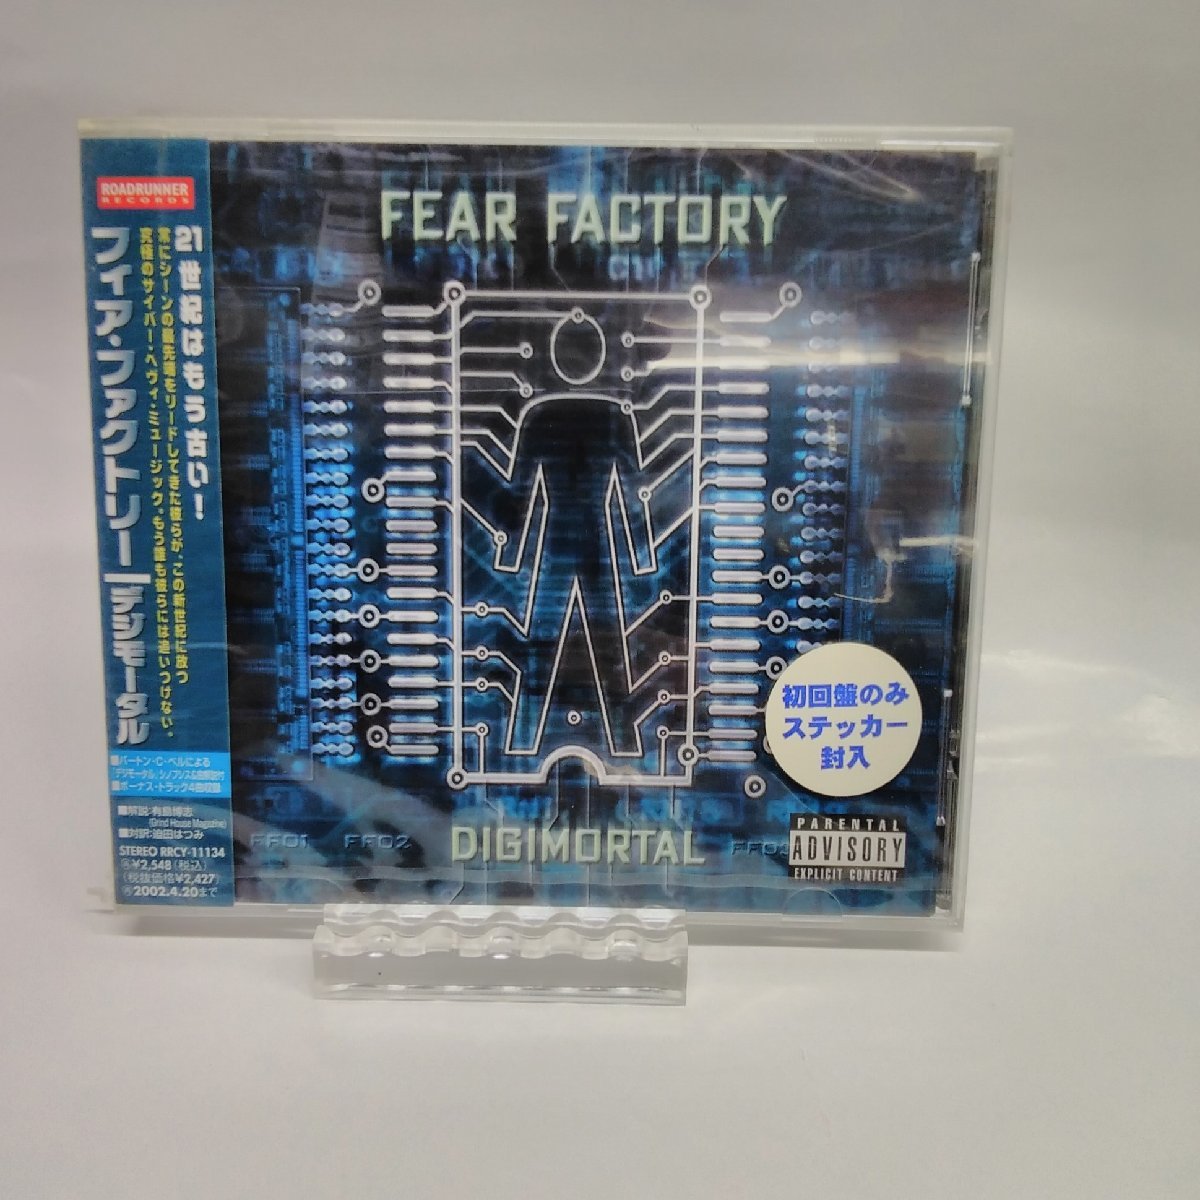 Fear Factory・Digimortal・RRCY-11134・CD・DVD・処分超特価!!